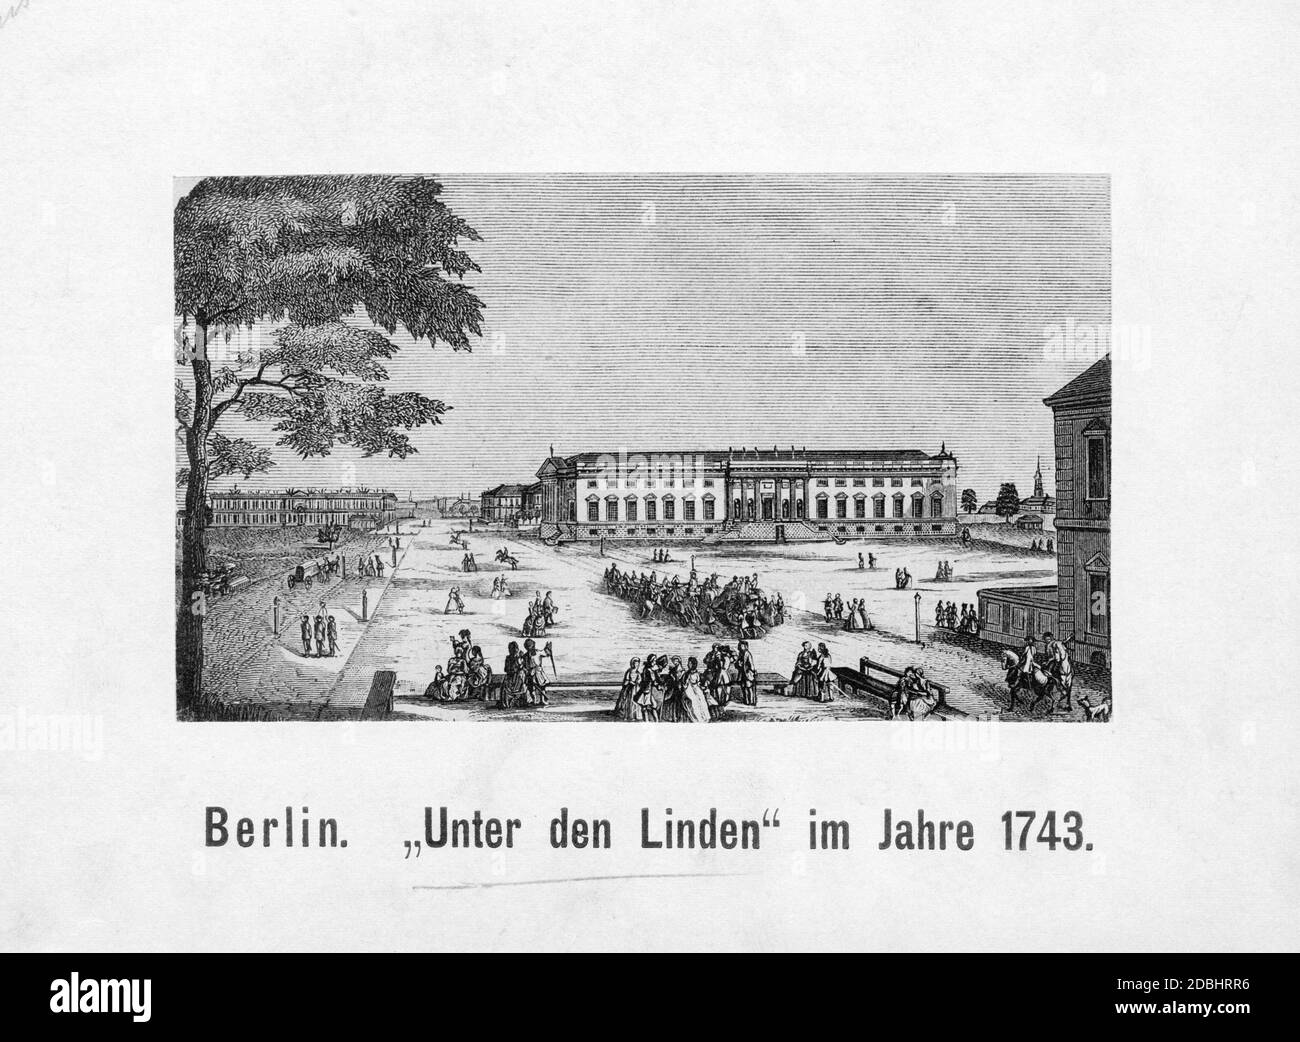 Diese Zeichnung aus dem Jahr 1743 zeigt den Boulevard unter den Linden in Berlin mit Fußgängern und Fahrern. Die prächtigen Gebäude sind noch immer entlang der Straße mit Lücken dazwischen verstreut. Auf der linken Seite befindet sich das Zeughaus. Stockfoto